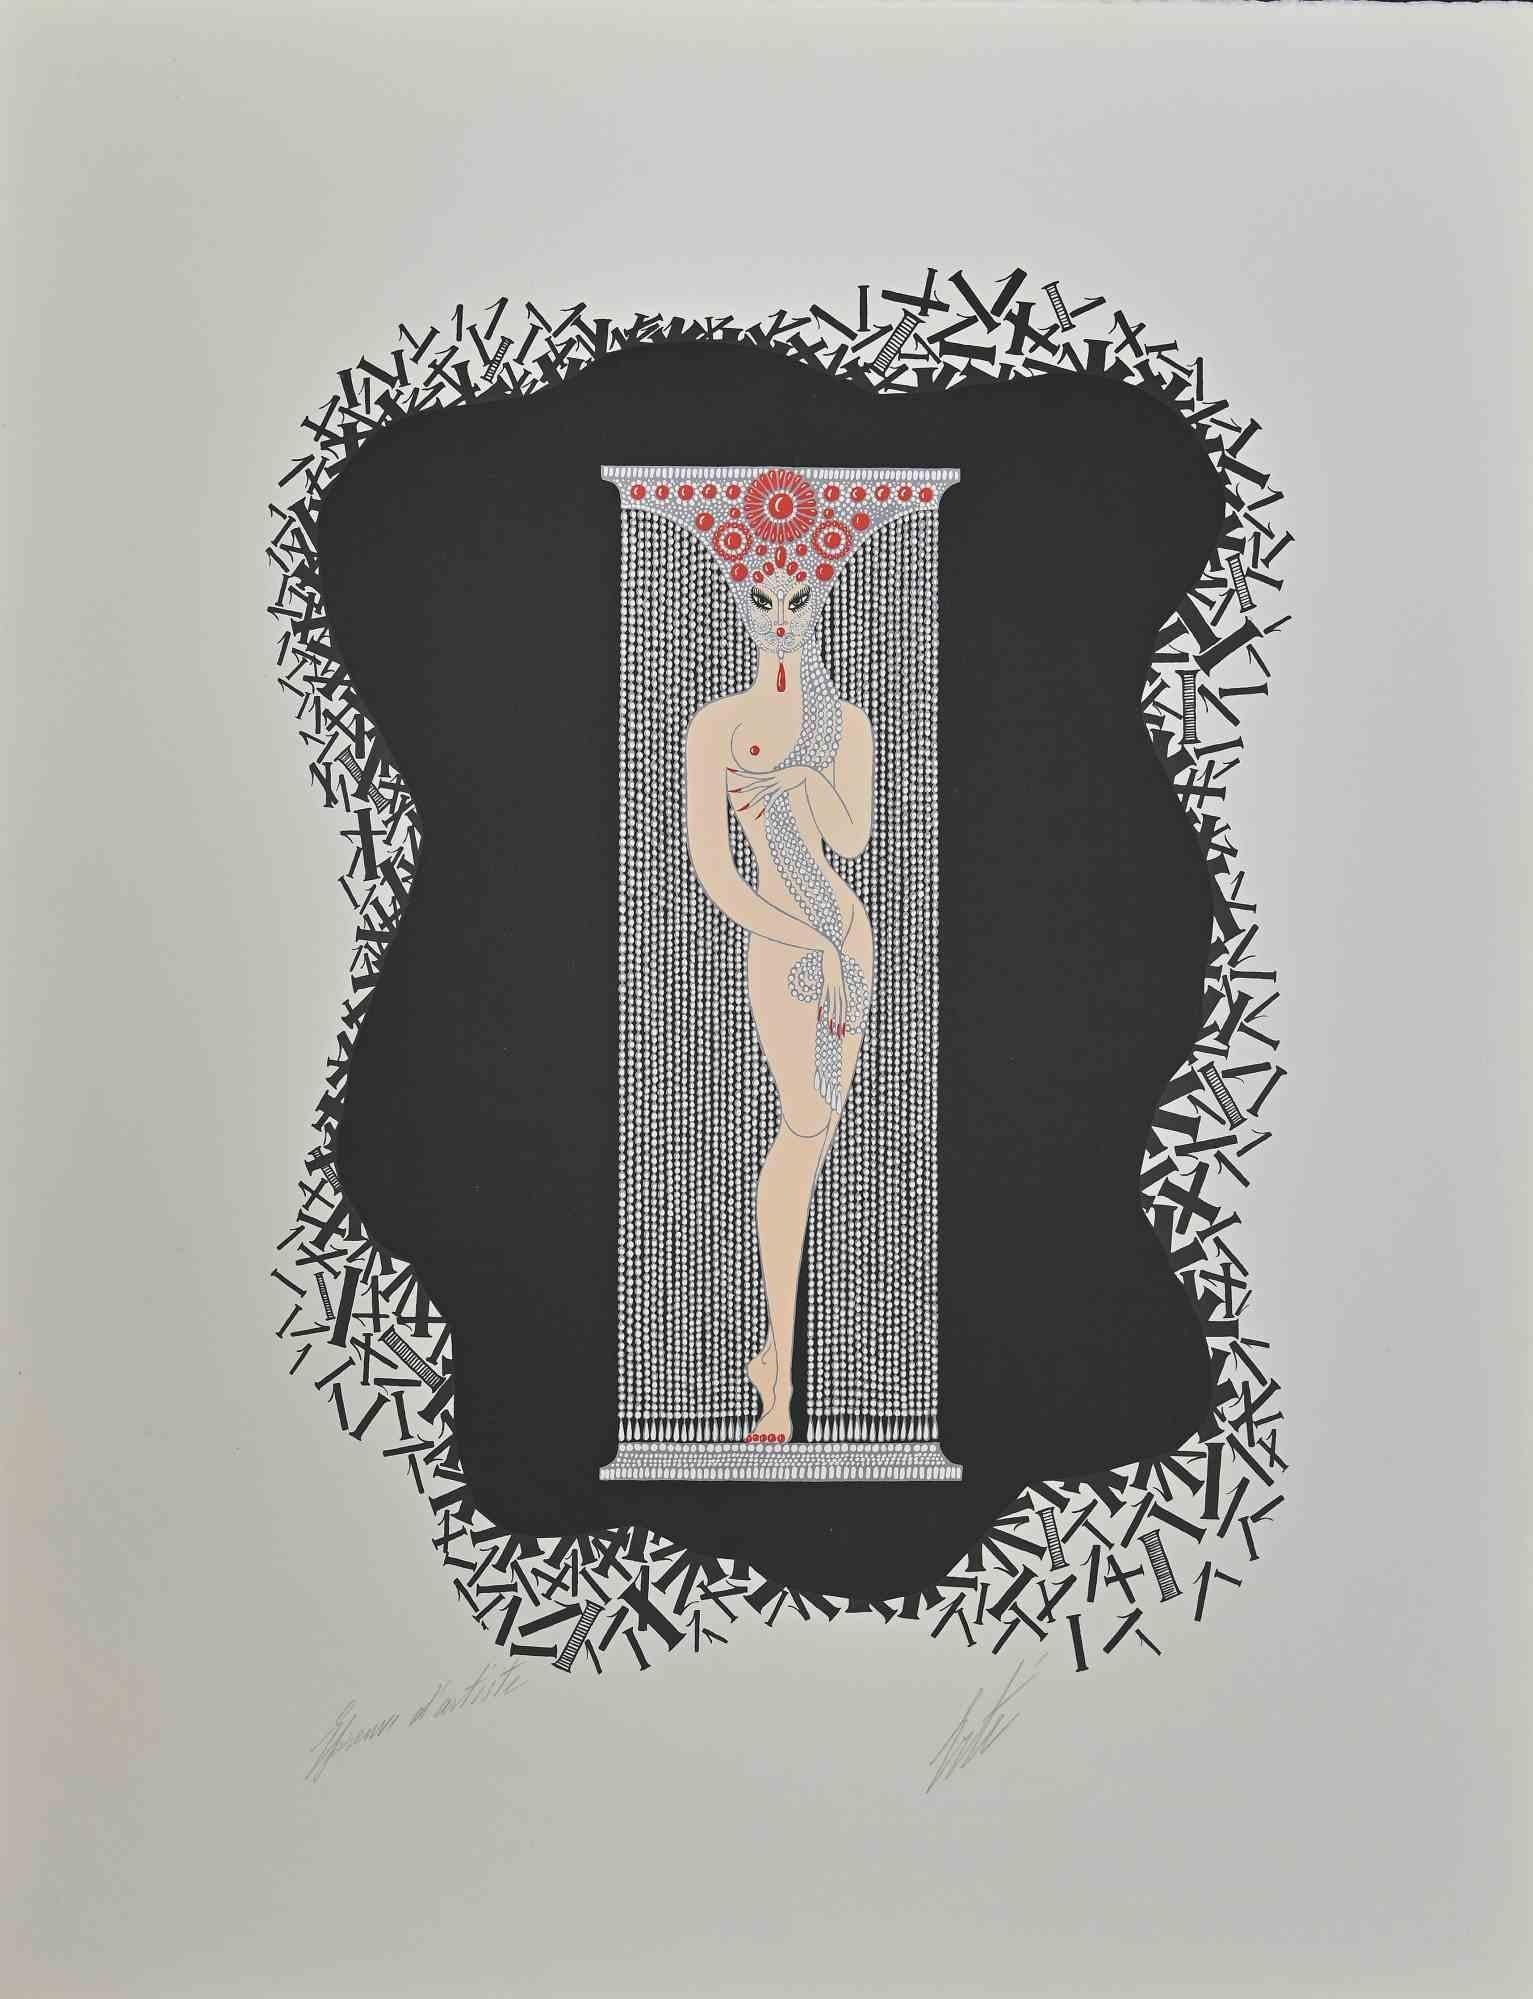 Le 1 est une œuvre d'art moderne contemporaine réalisée en 1968 par Erté (Romain de Tirtoff).

Lithographie en couleurs mélangées sur papier.

L'œuvre d'art est tirée de la série "Les Chiffres".

Signé à la main dans la marge inférieure.

Preuve de